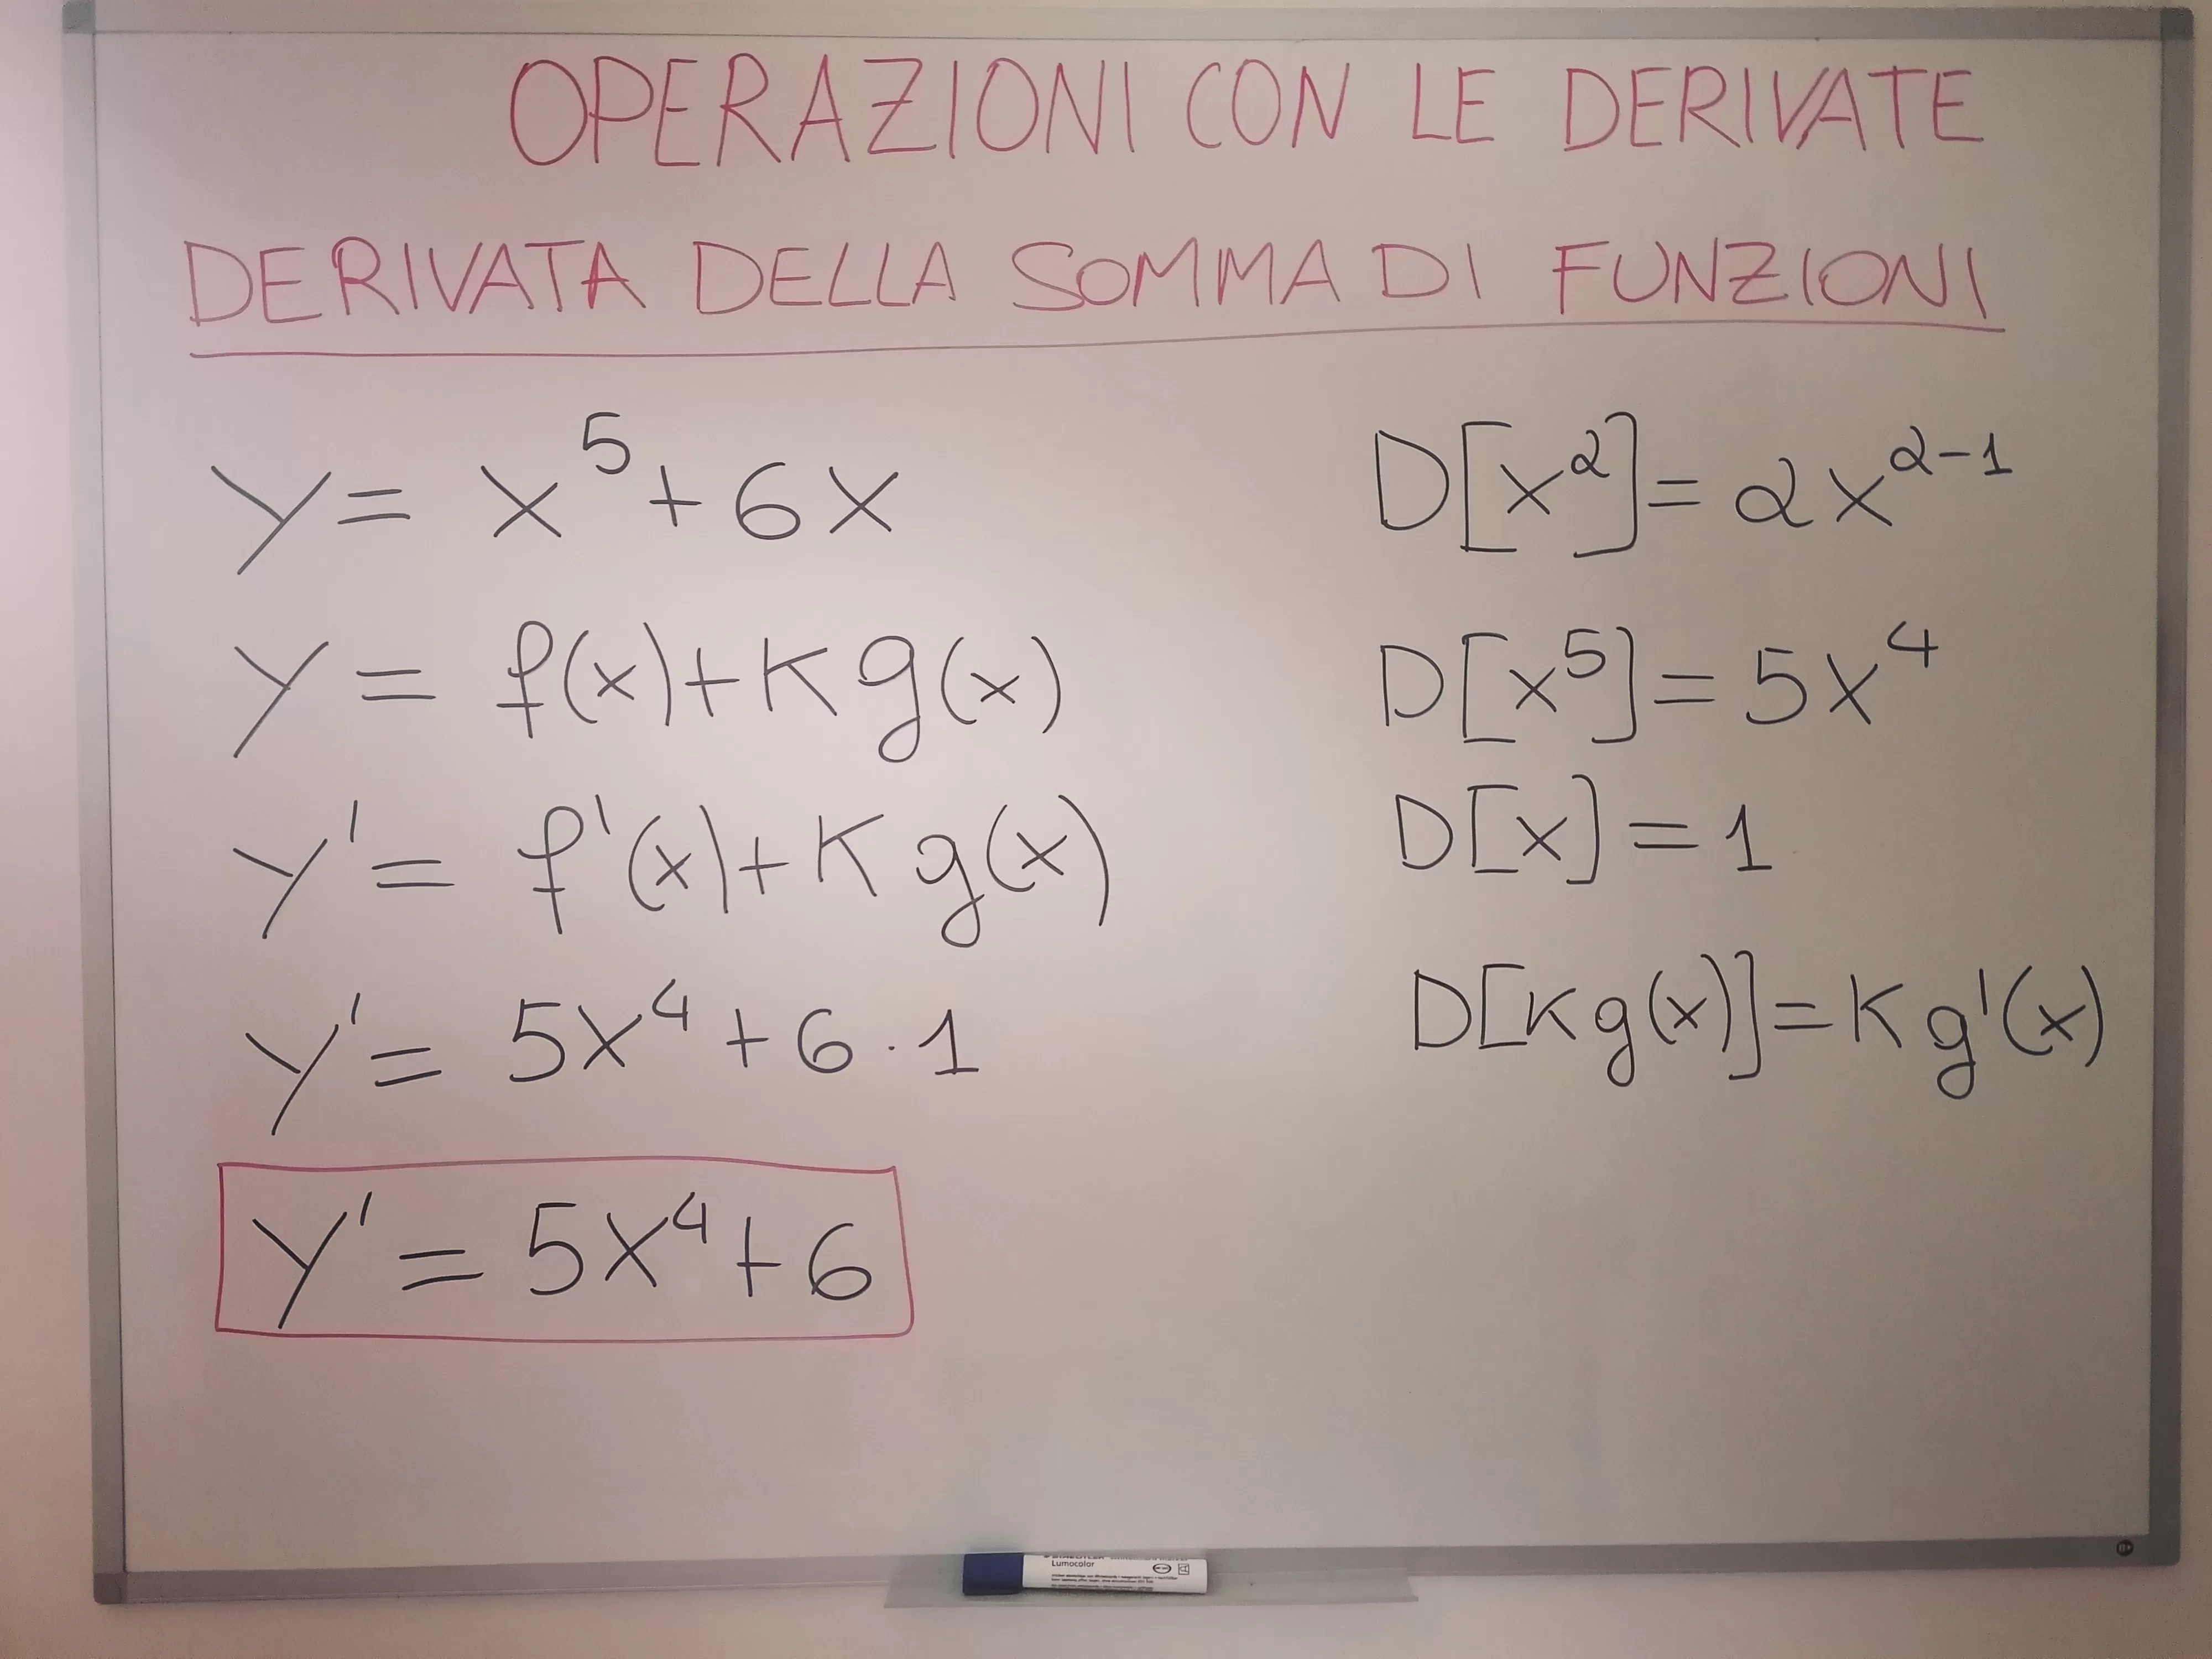 Calcola la derivata di y=x^5+6x